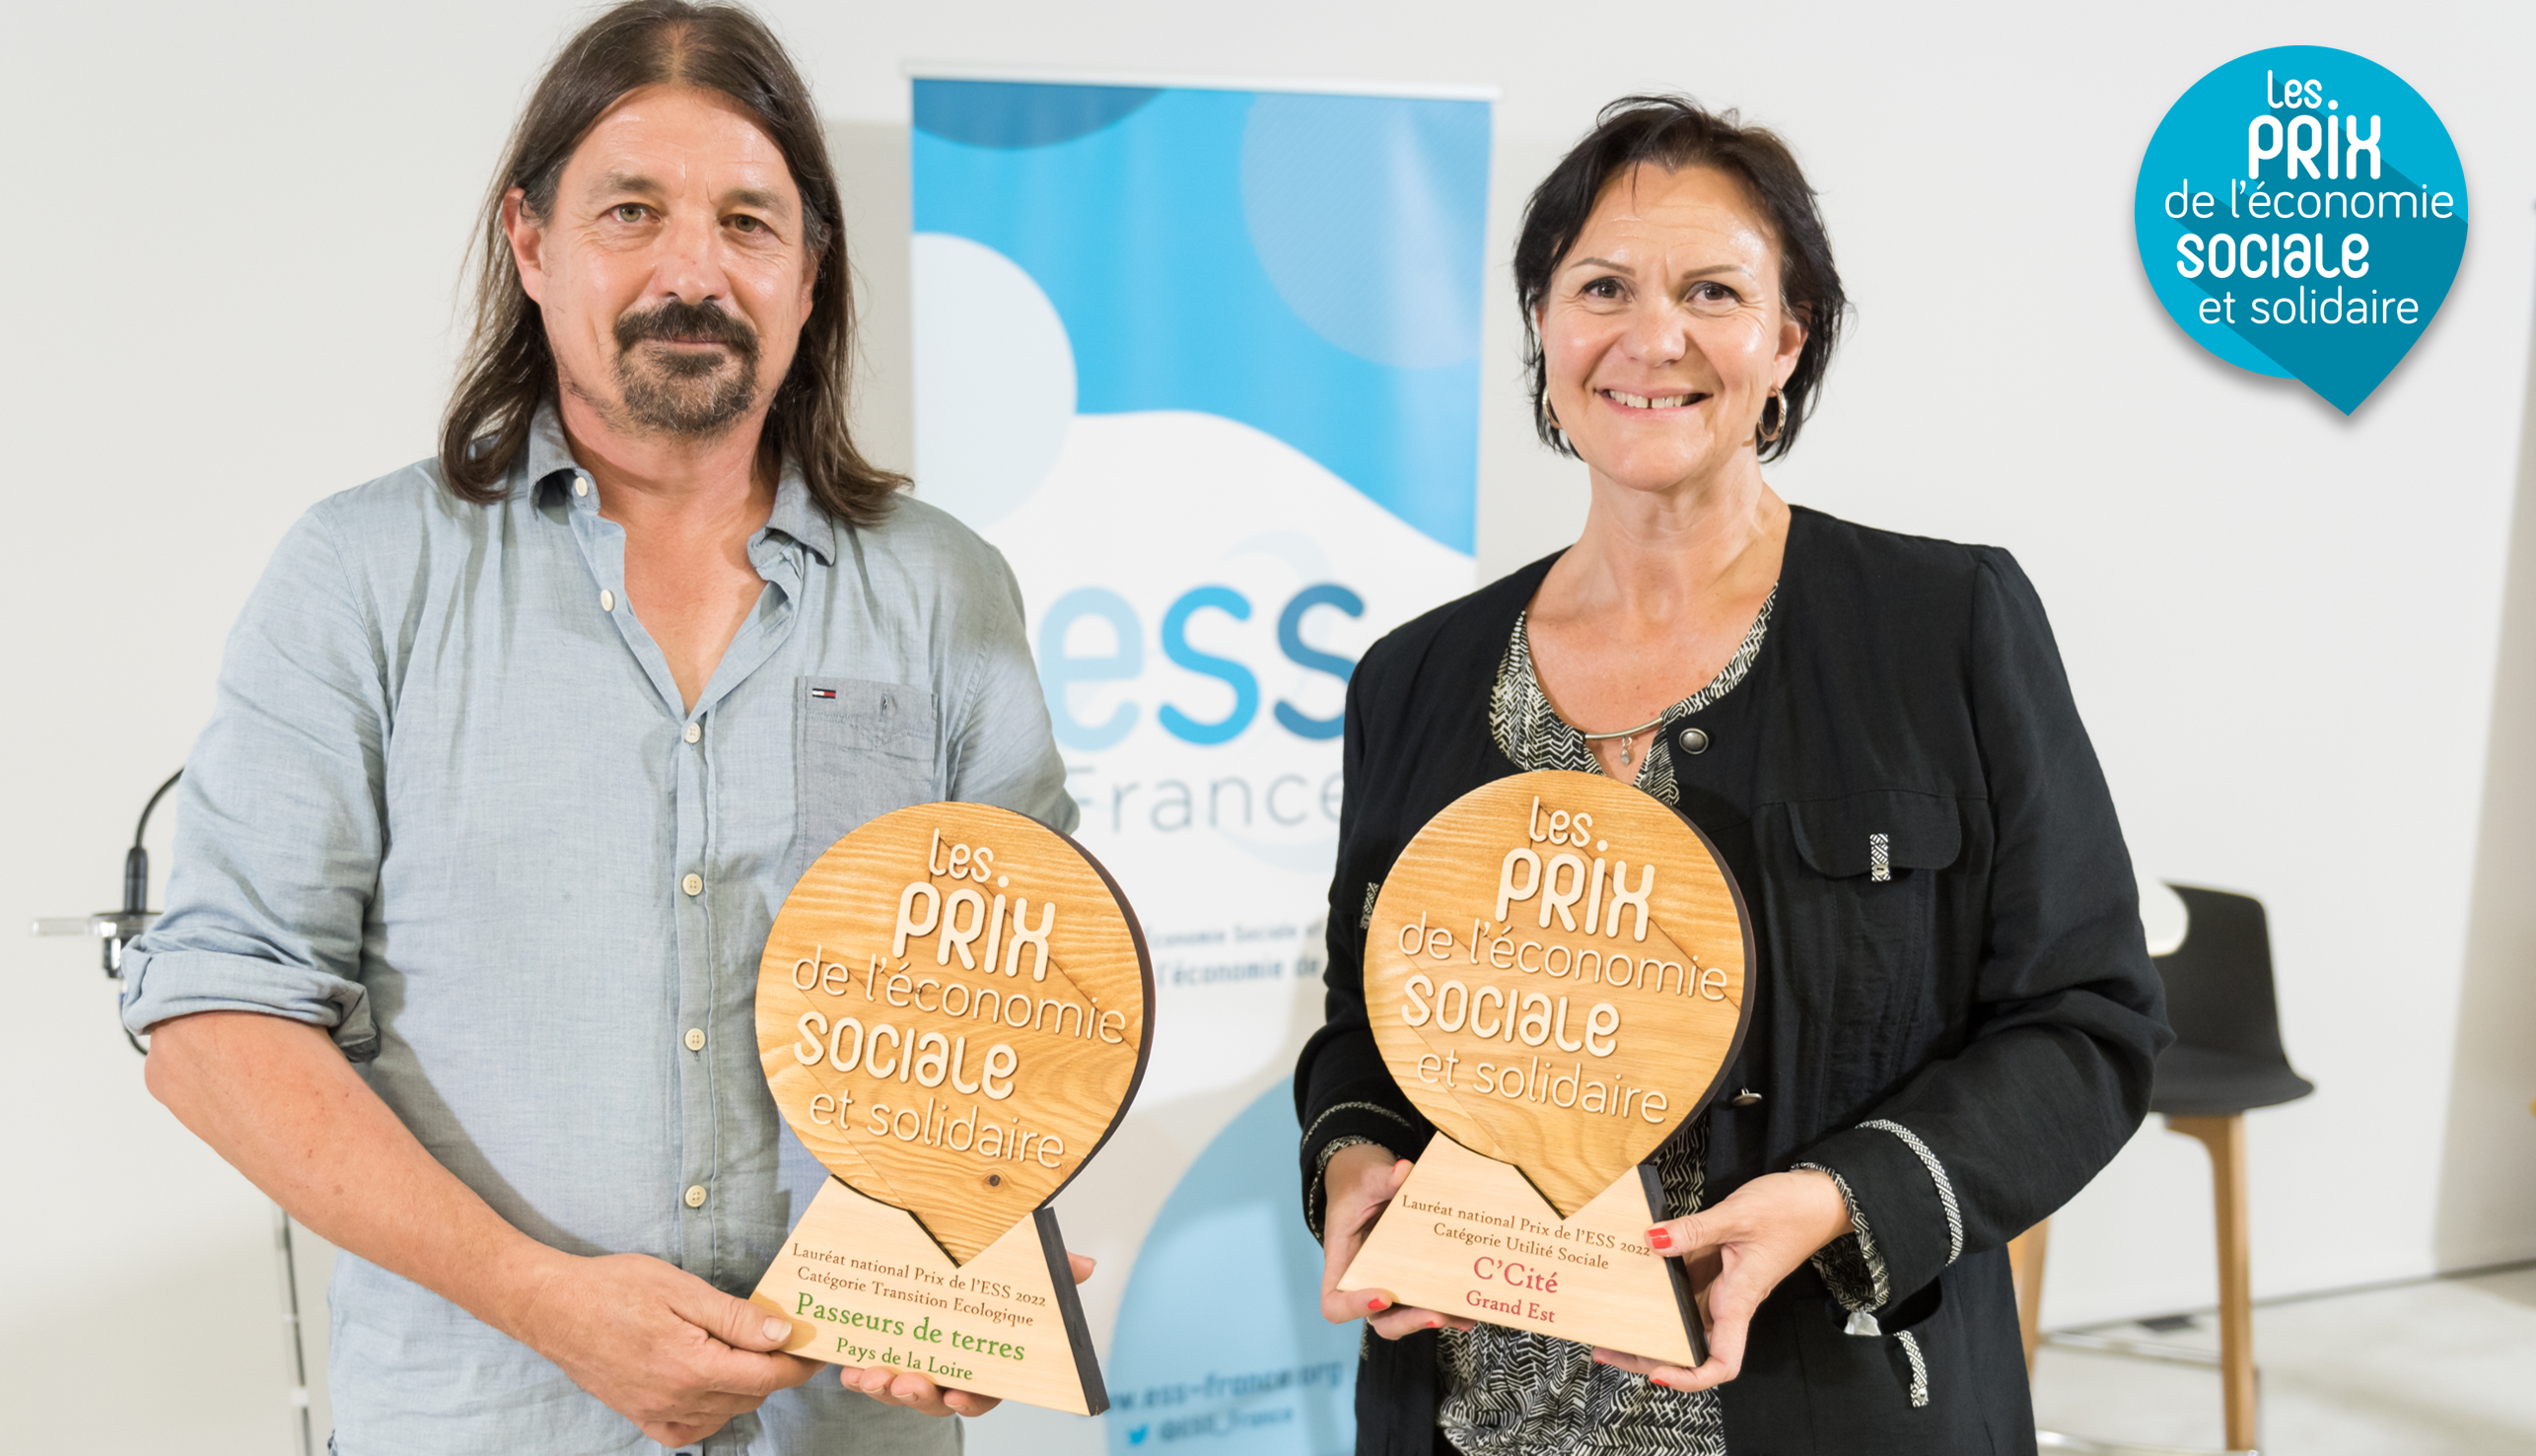 Photo des deux lauréats - Passeurs de terres et C'Cité - tenant leur trophée des Prix de l'ESS 2022